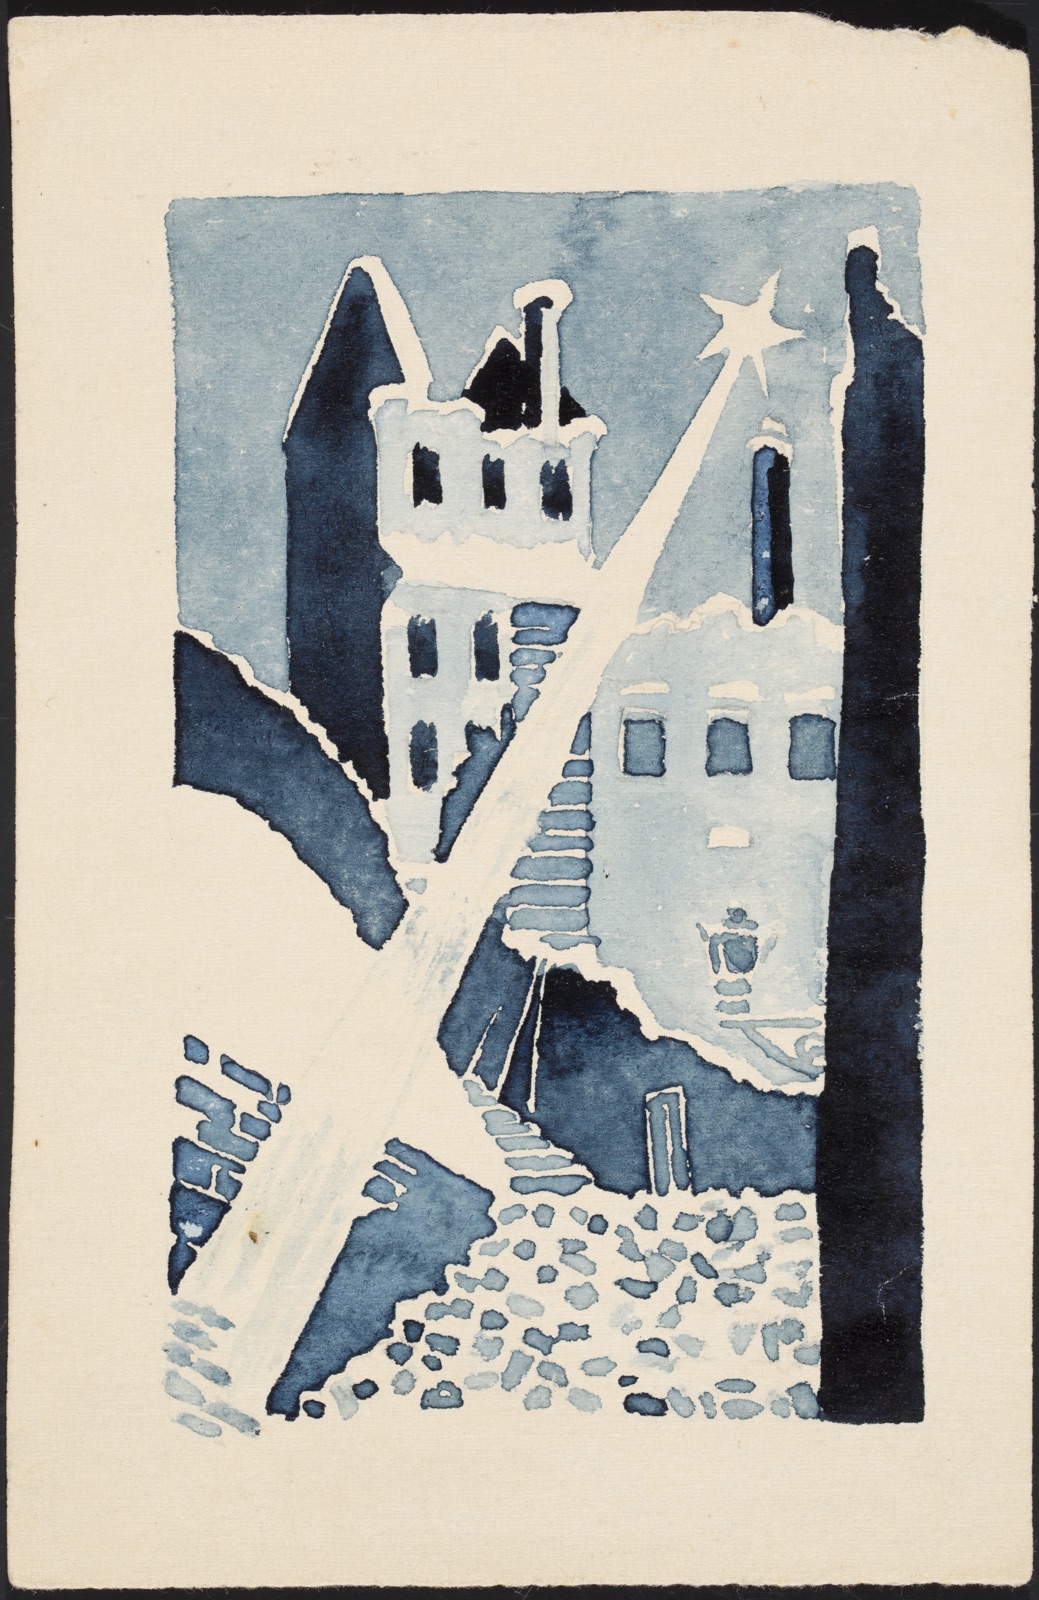 Geceye Doğru Boş, Yanmış Varşova by Henryk Beck - 1944 - 15,3 x 10 cm 